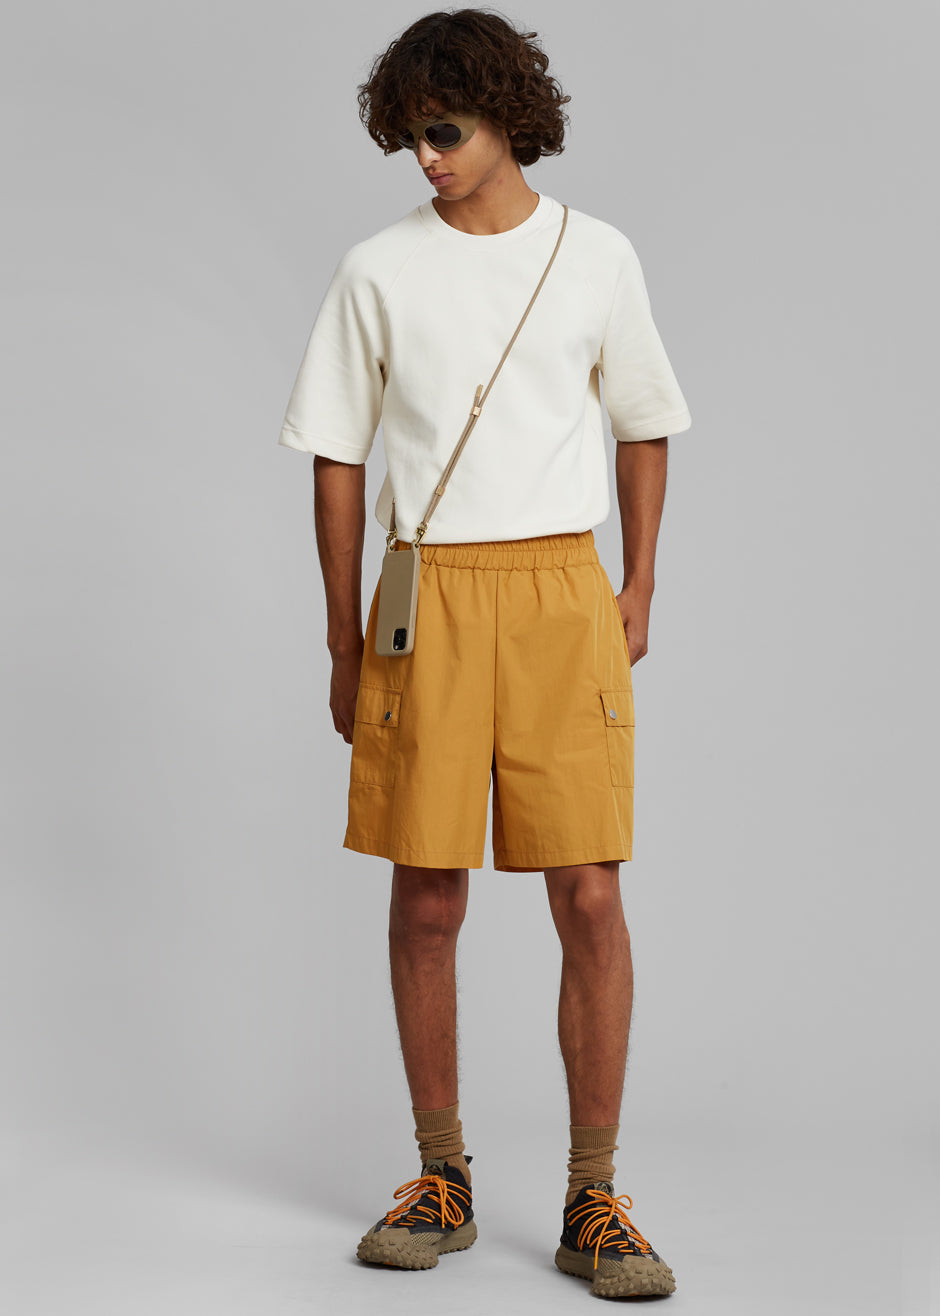 Spence Shorts - Orange - 1